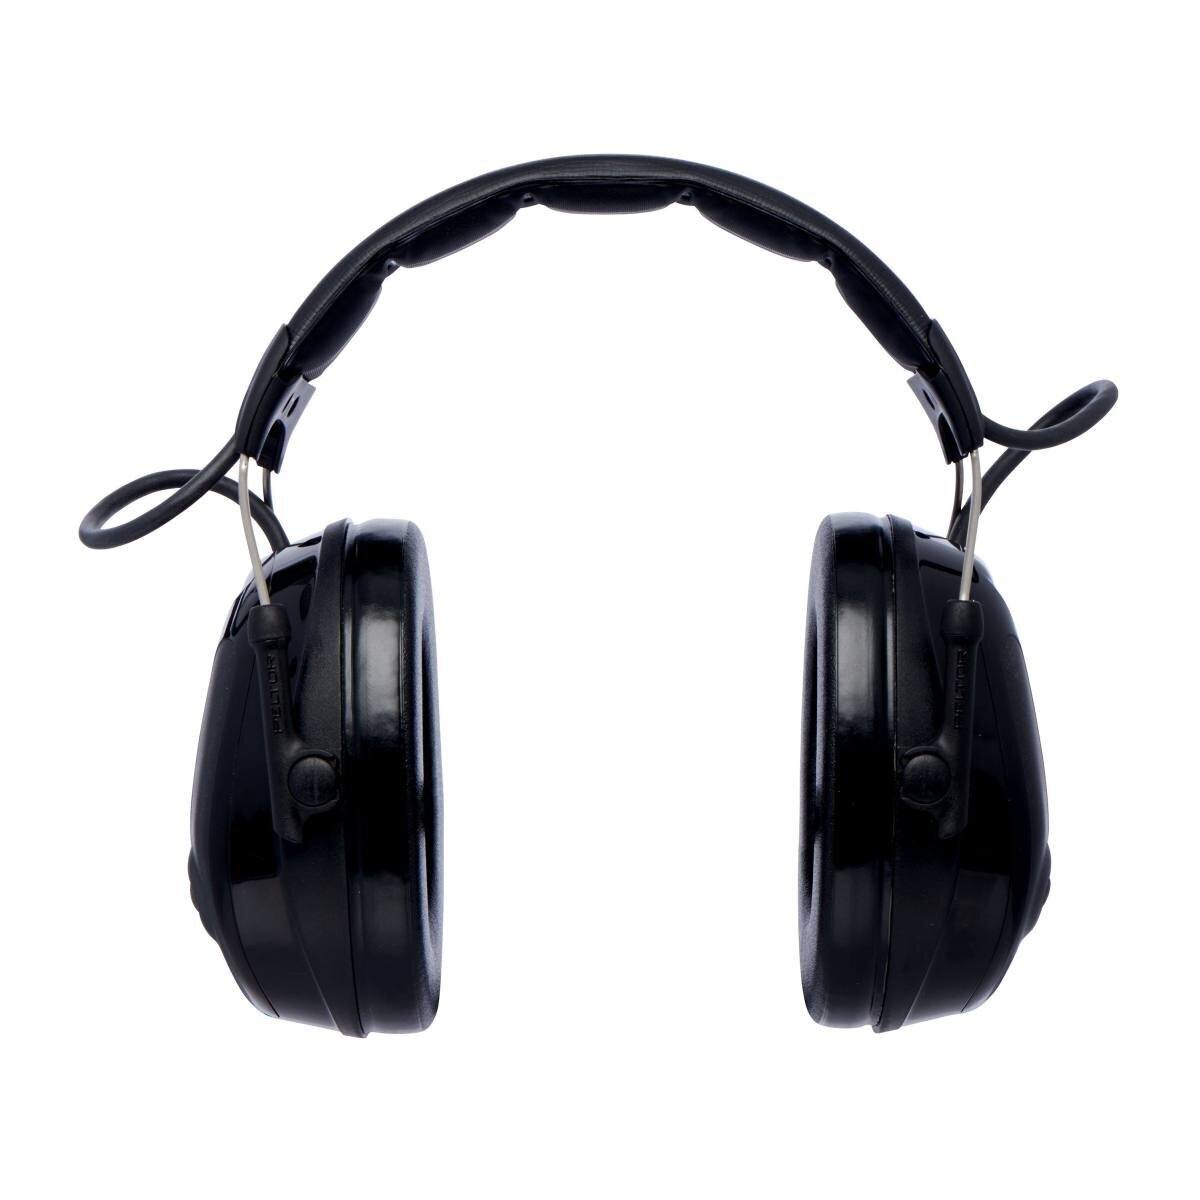 3M PELTOR ProTac III Slim kuulonsuojaimet, musta, pääpanta, aktiivinen, tasosta riippuvainen vaimennustekniikka ympäristön melun havaitsemiseen, SNR=26 dB, musta